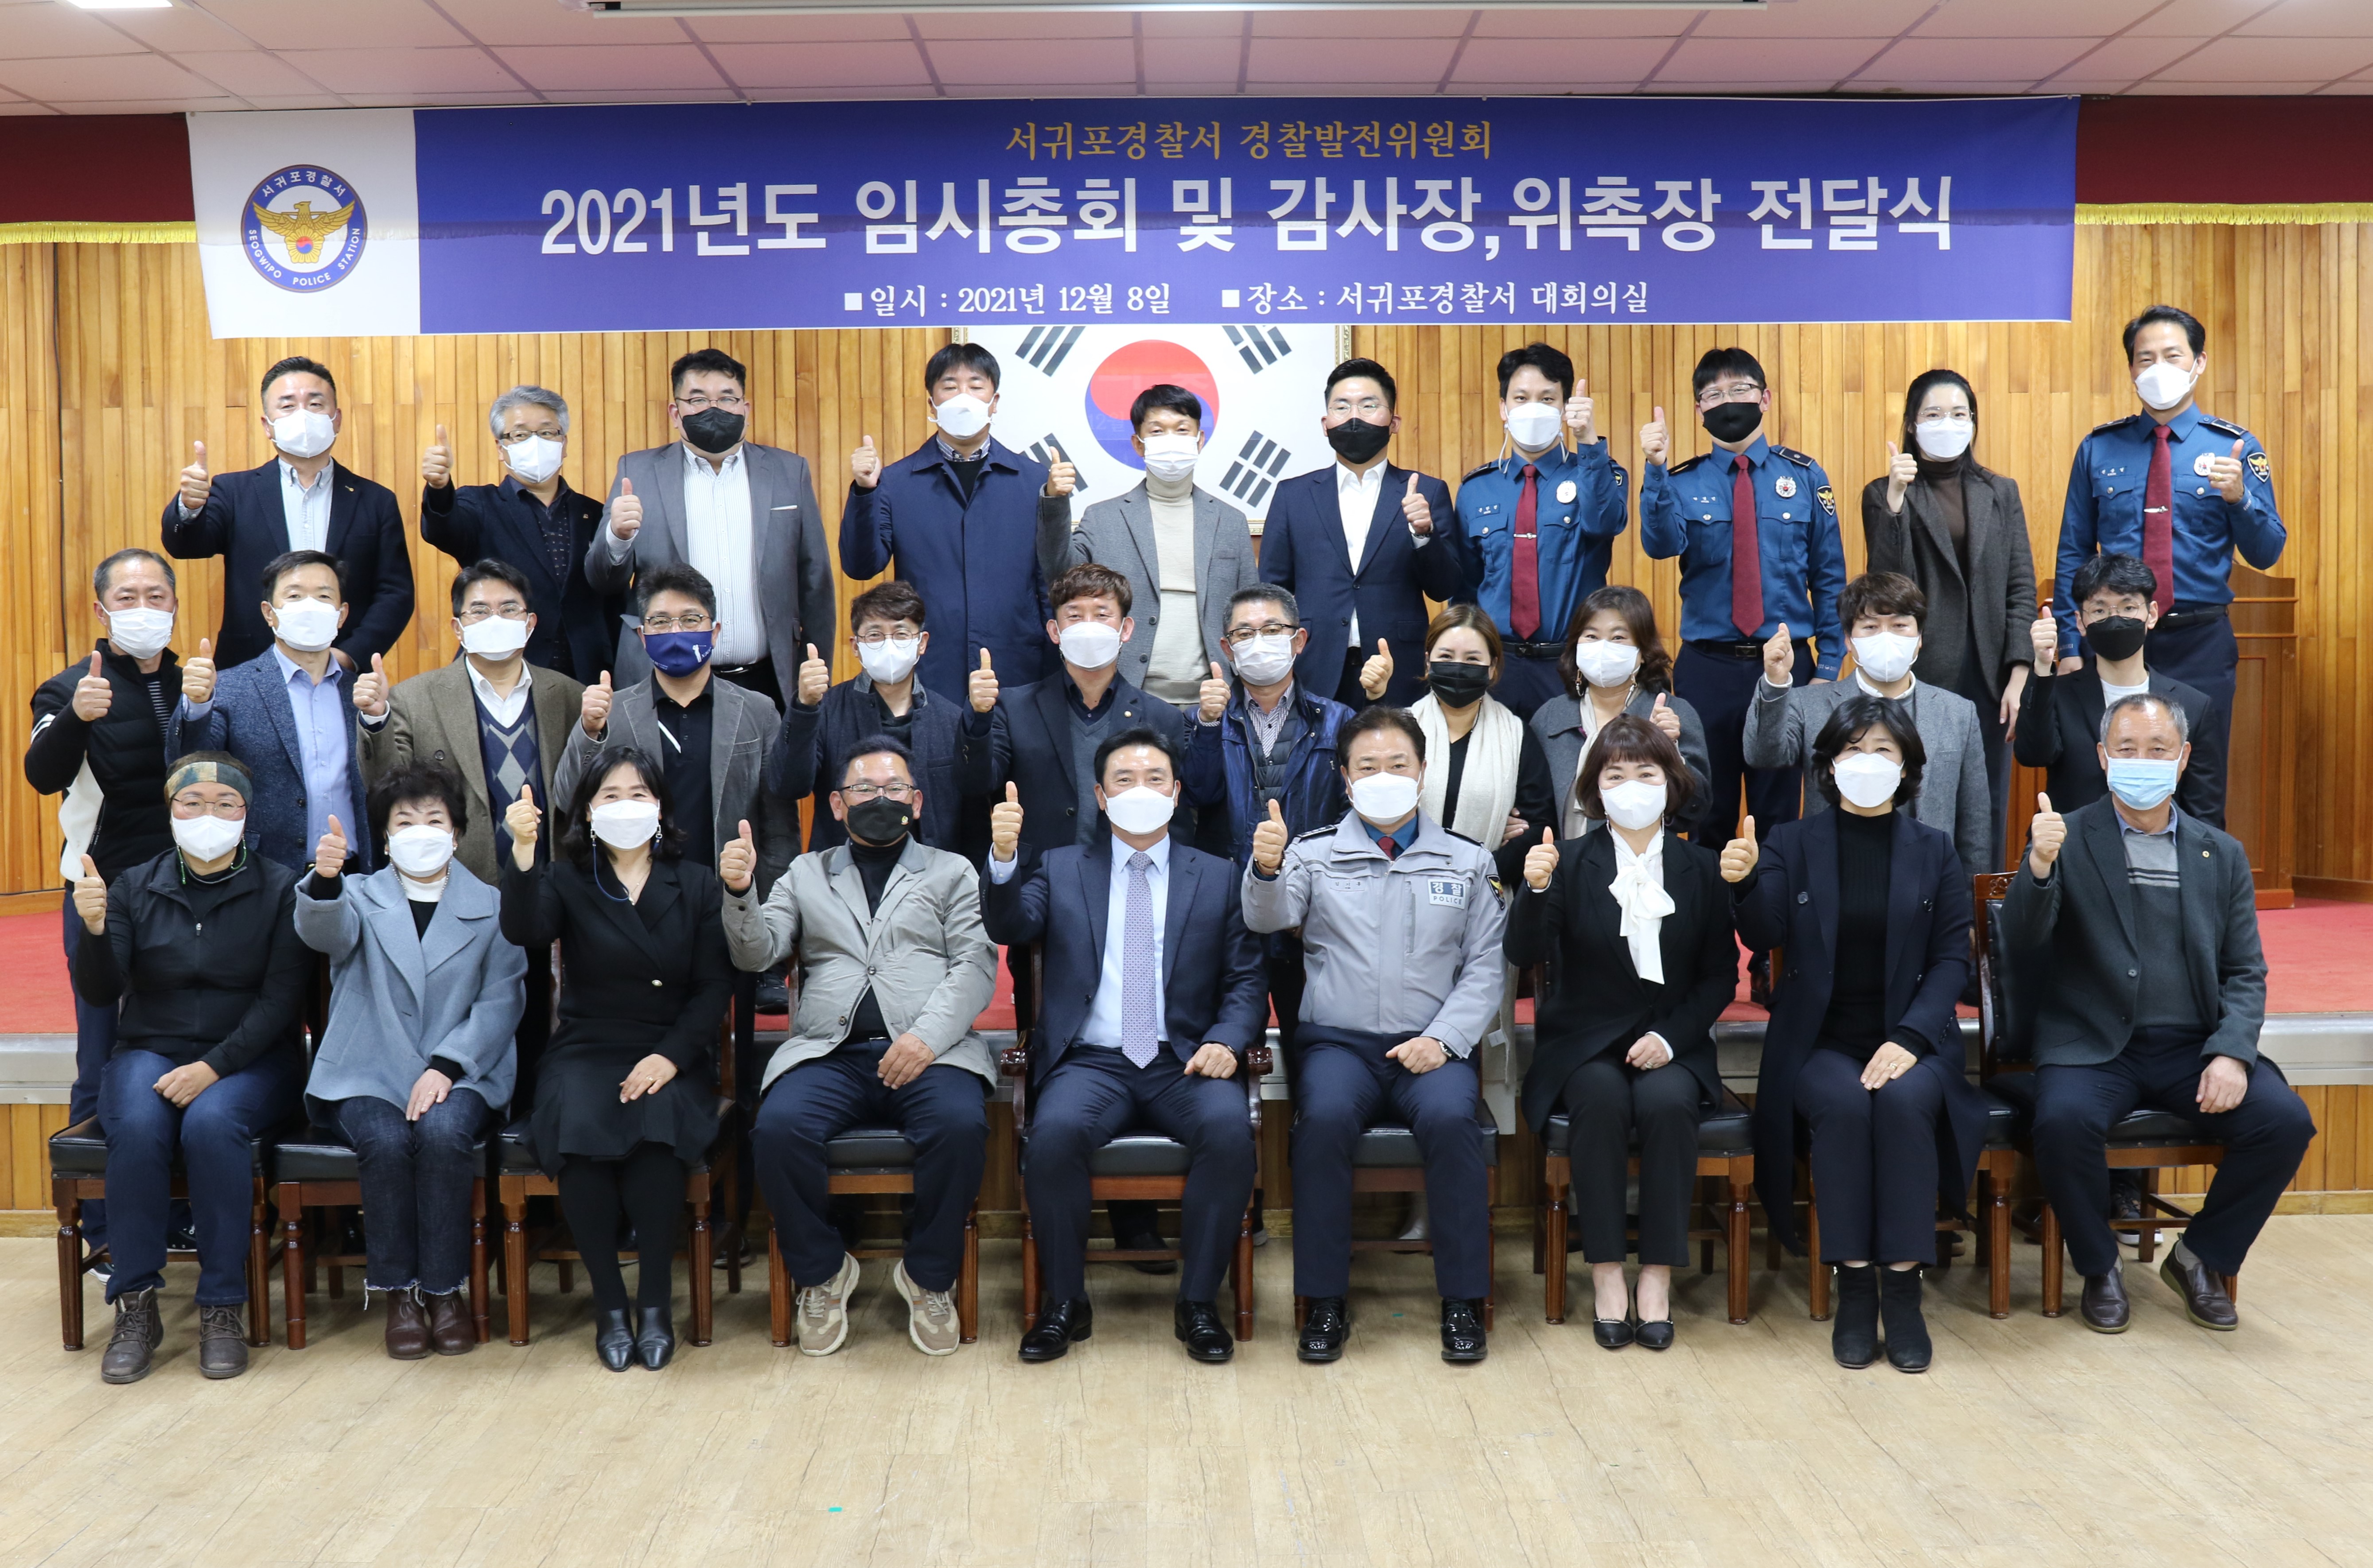 서귀포서, 2021 경찰발전협의회 임시총회 및 감사장, 위촉장 수여식 개최